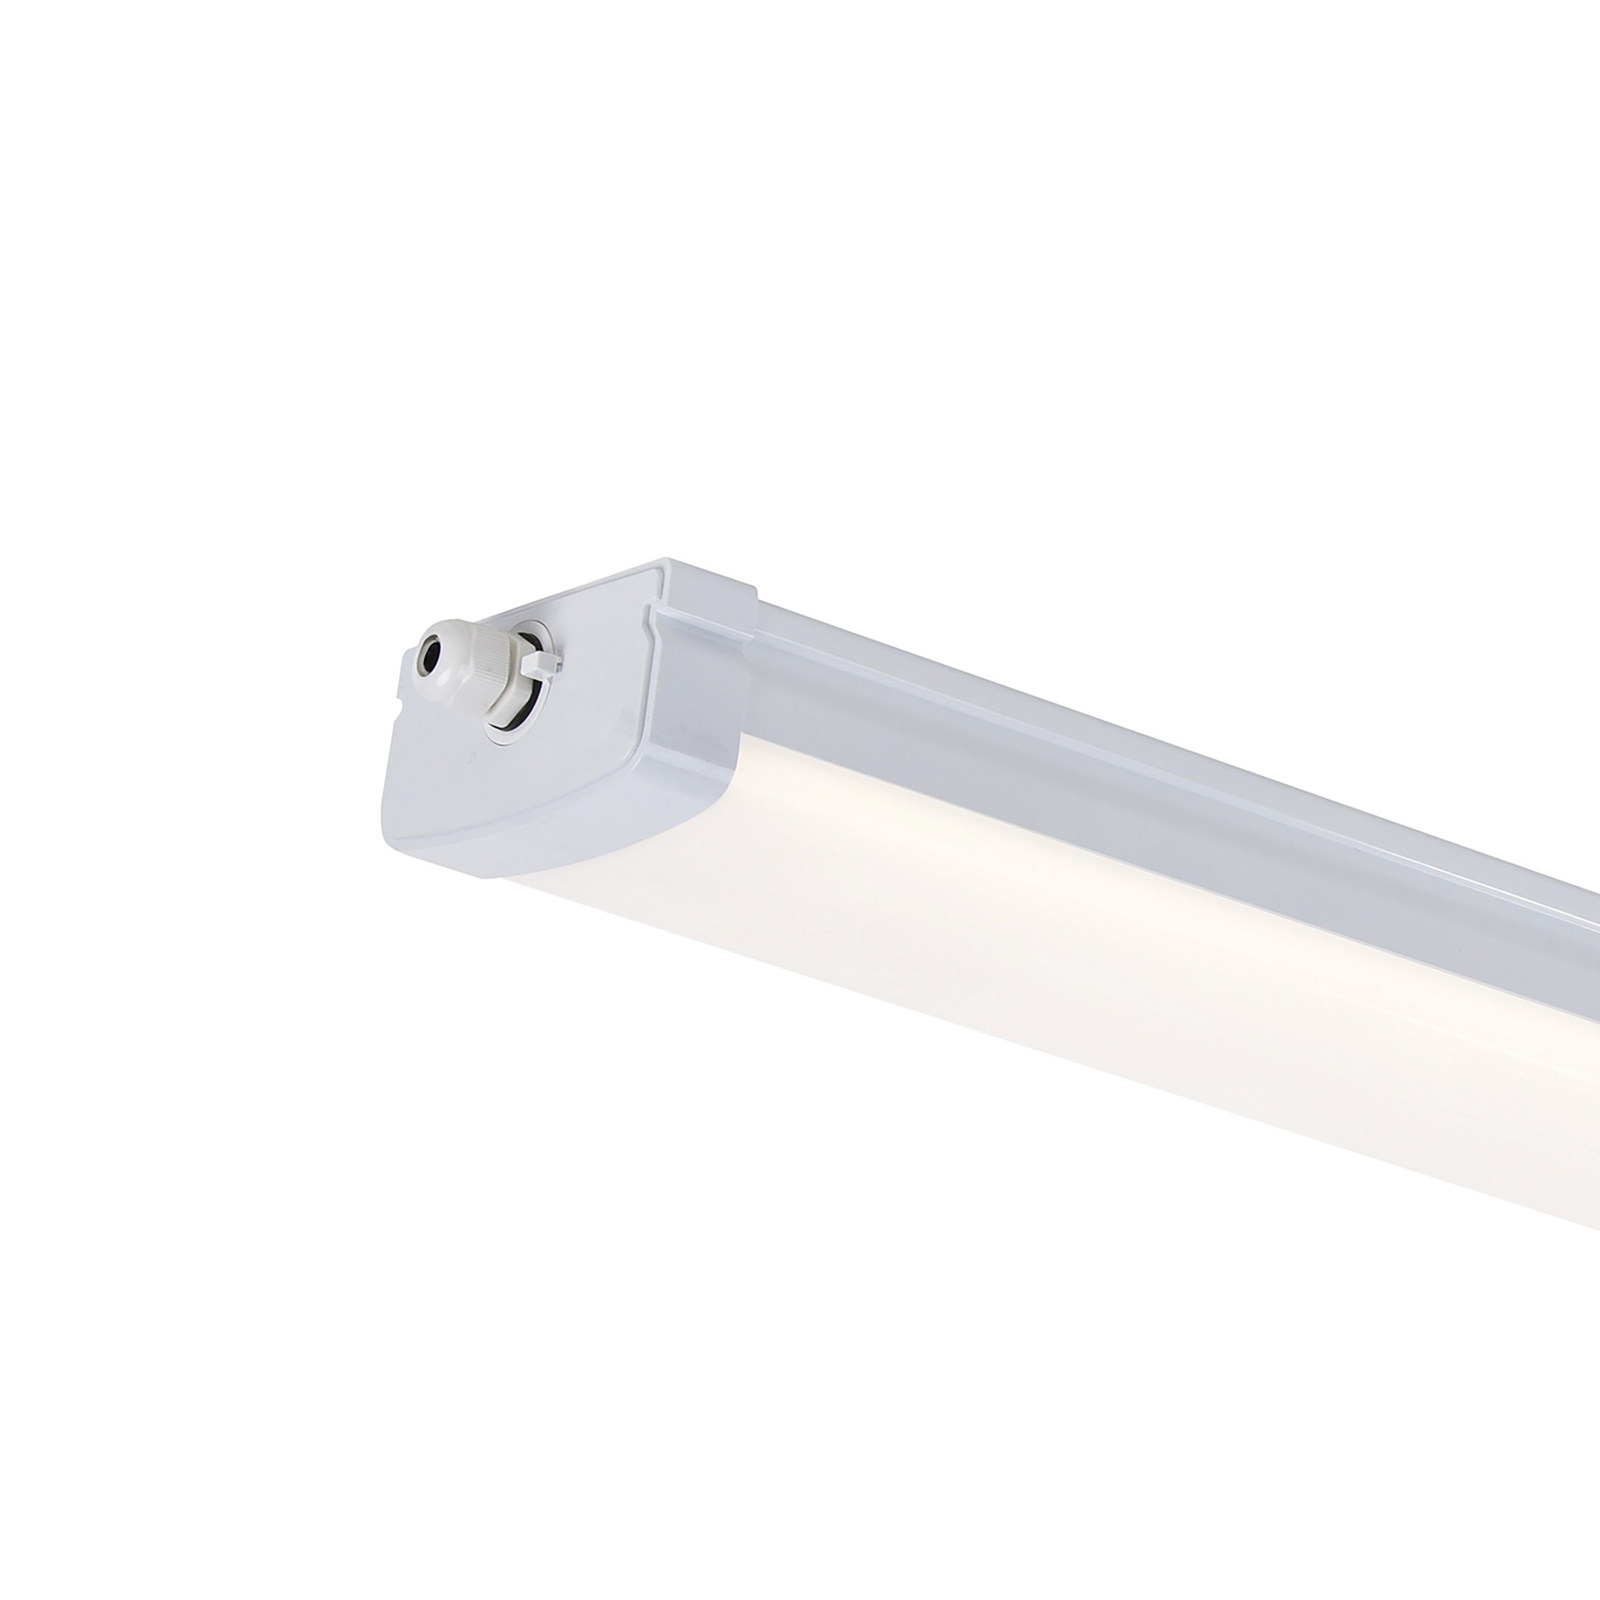 LED batten light Burbank IP65 plastic, 90cm, 4,000K